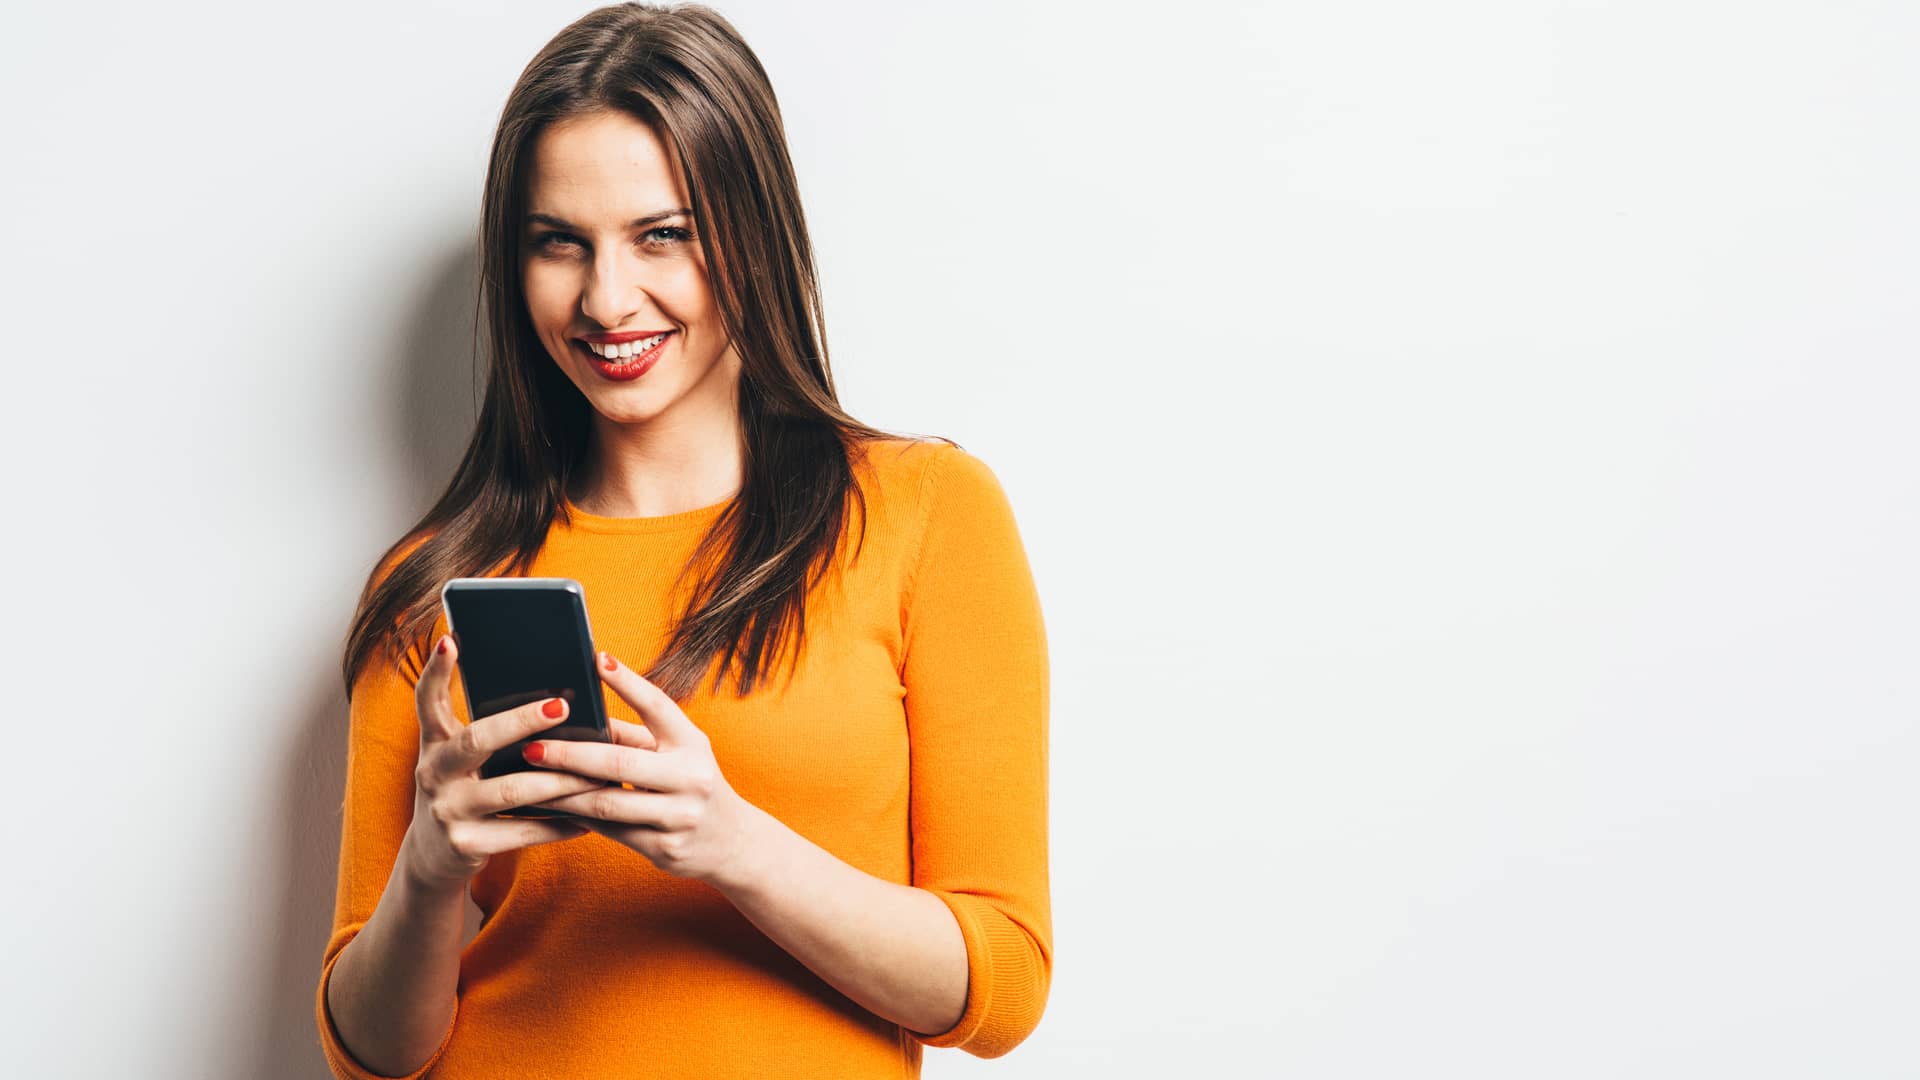 Mujer sonriente utilizando su móvil libre